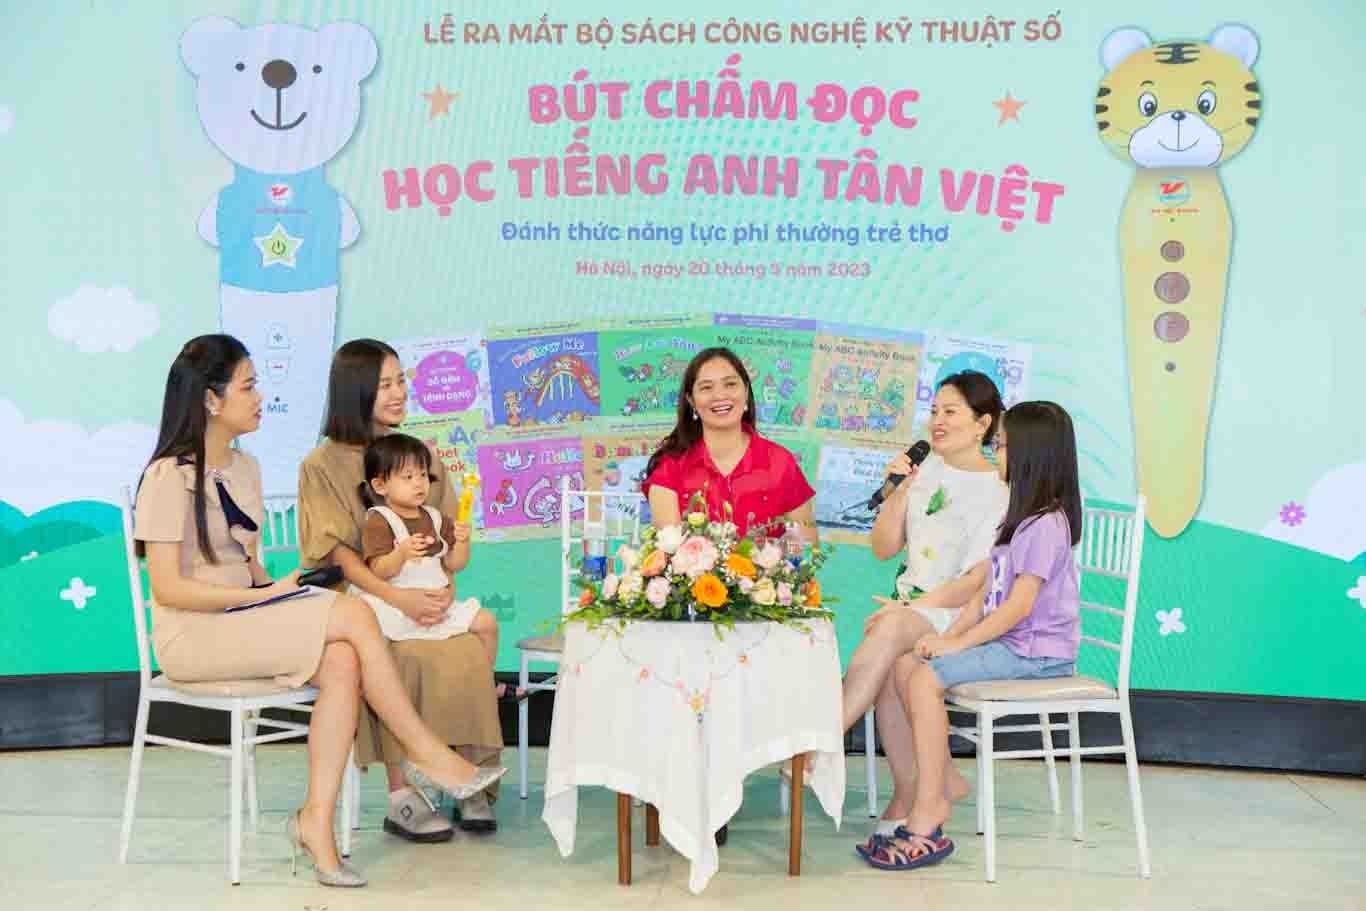 Ra mắt bộ sách công nghệ kỹ thuật số “Bút chấm đọc - Học tiếng Anh Tân Việt Đánh thức năng lực phi thường trẻ thơ”